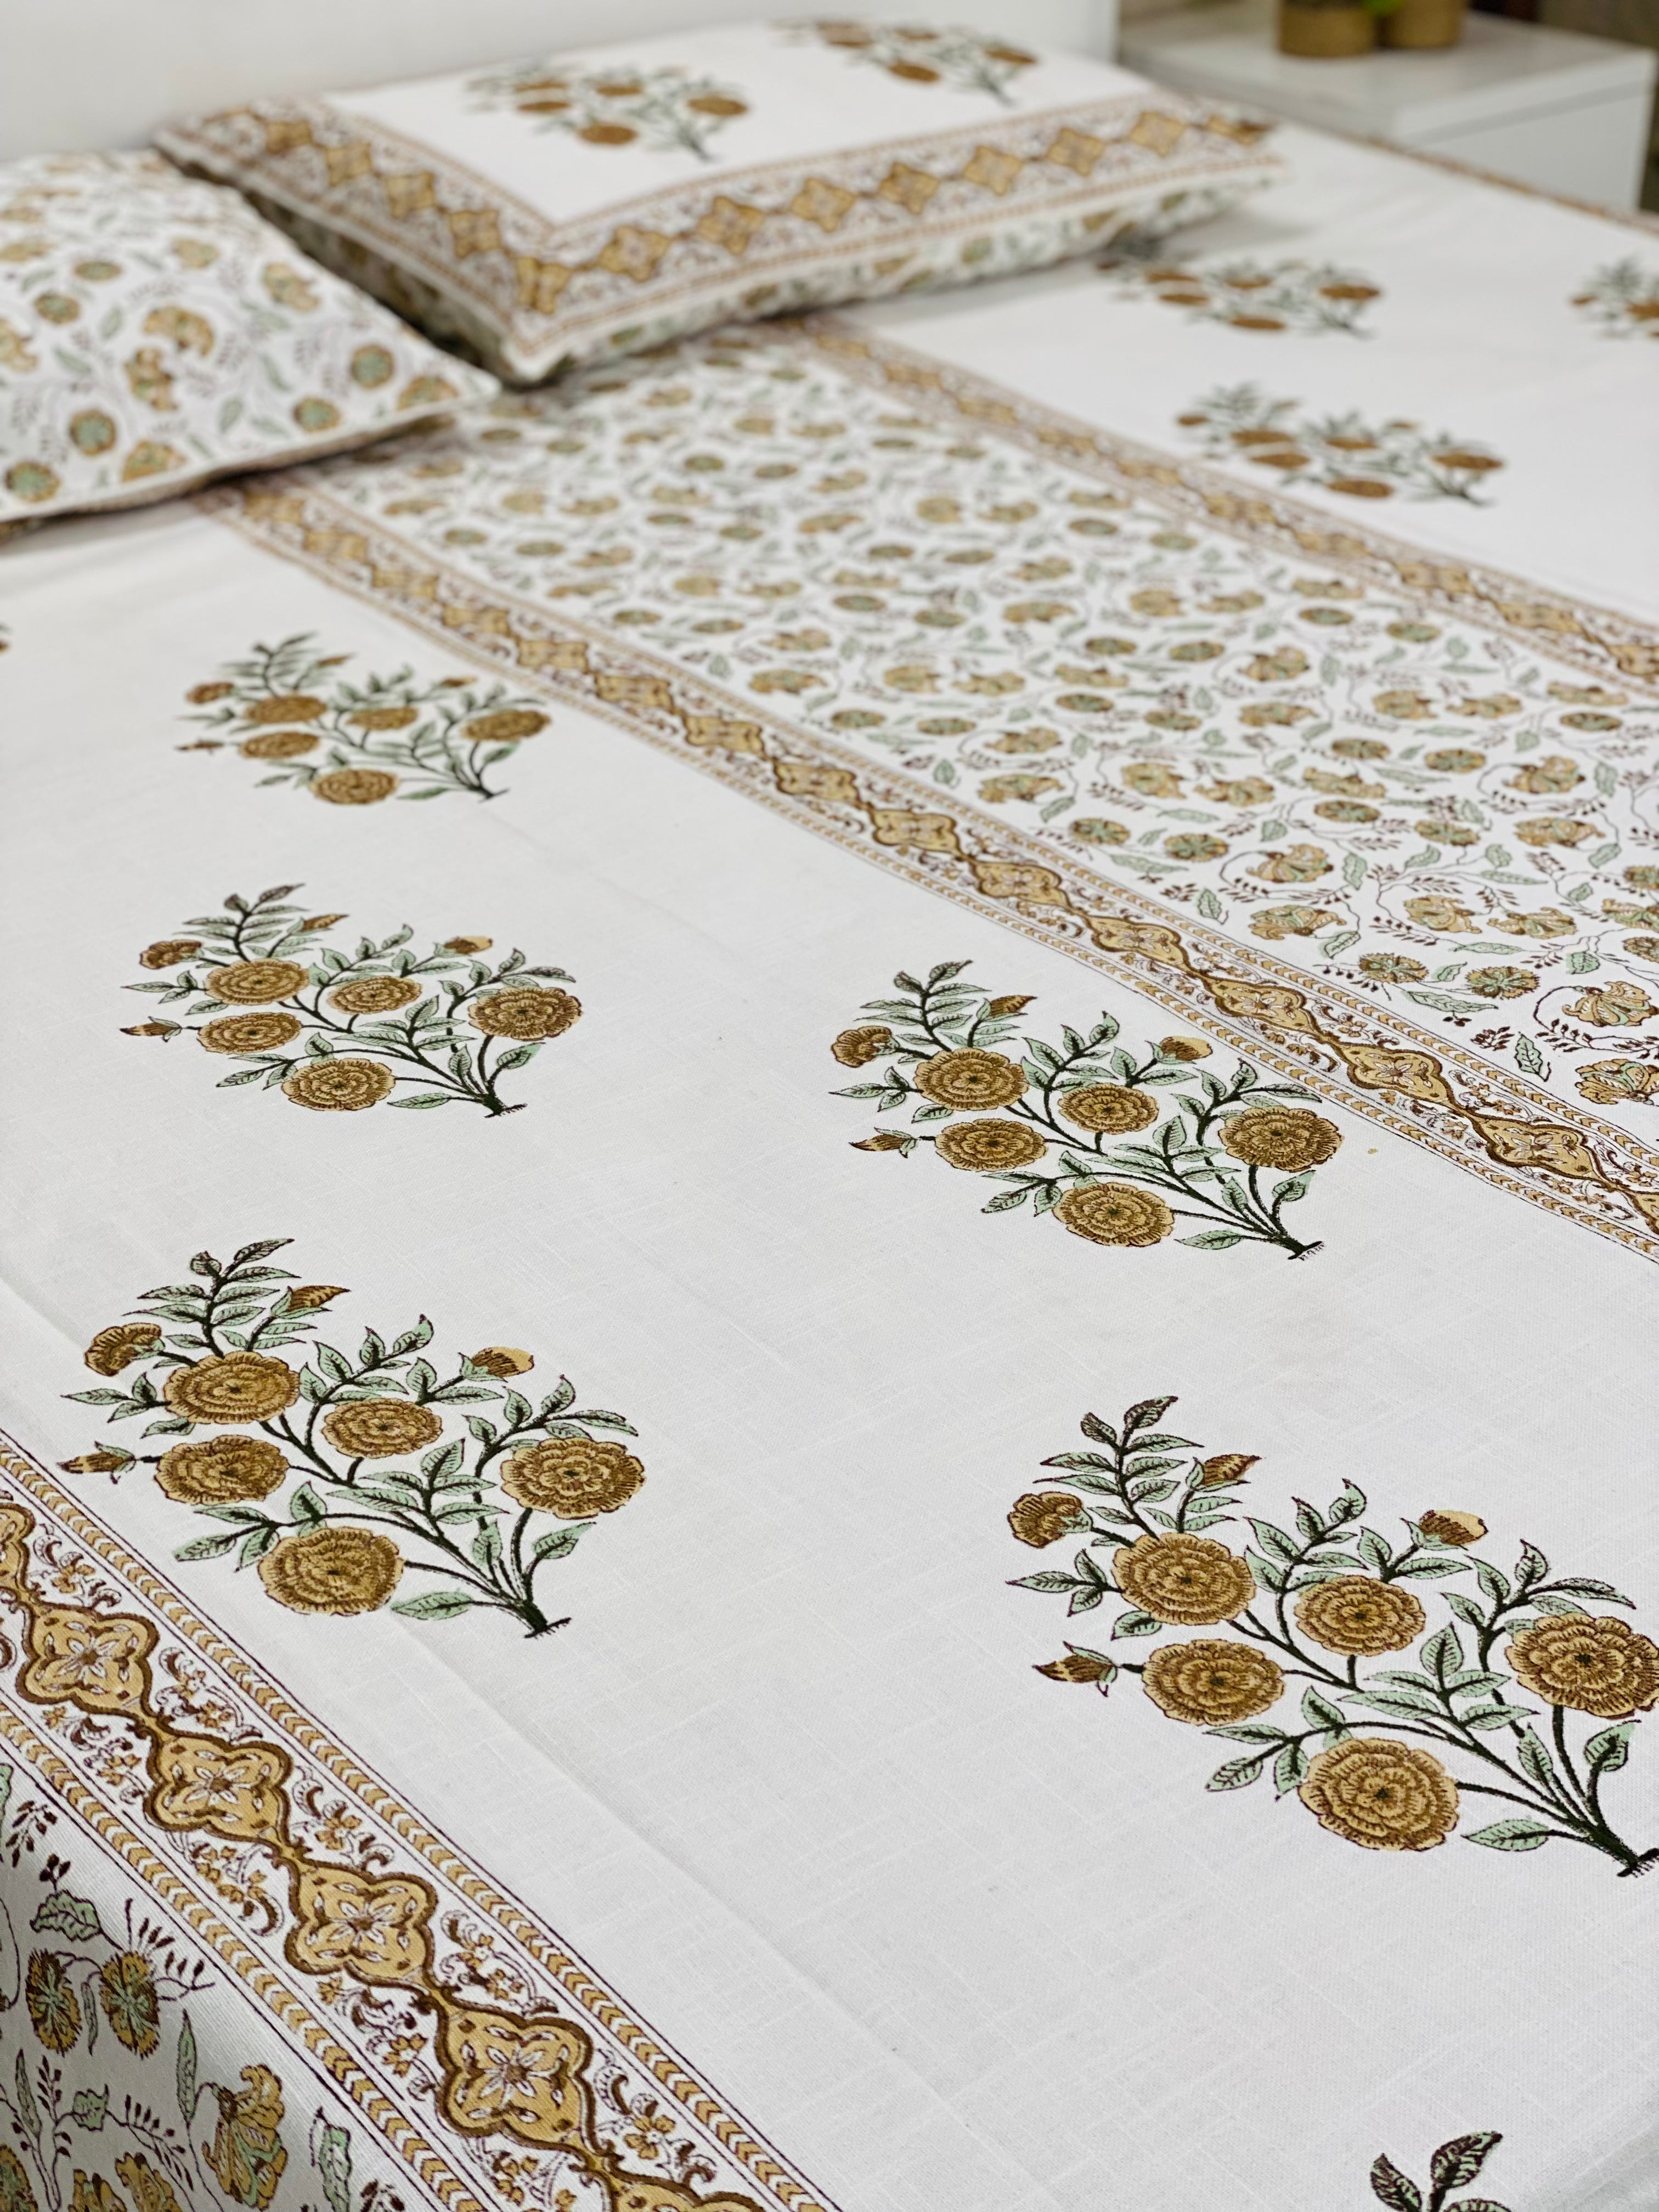 Hand Block Printed Handloom Cotton Bedspread